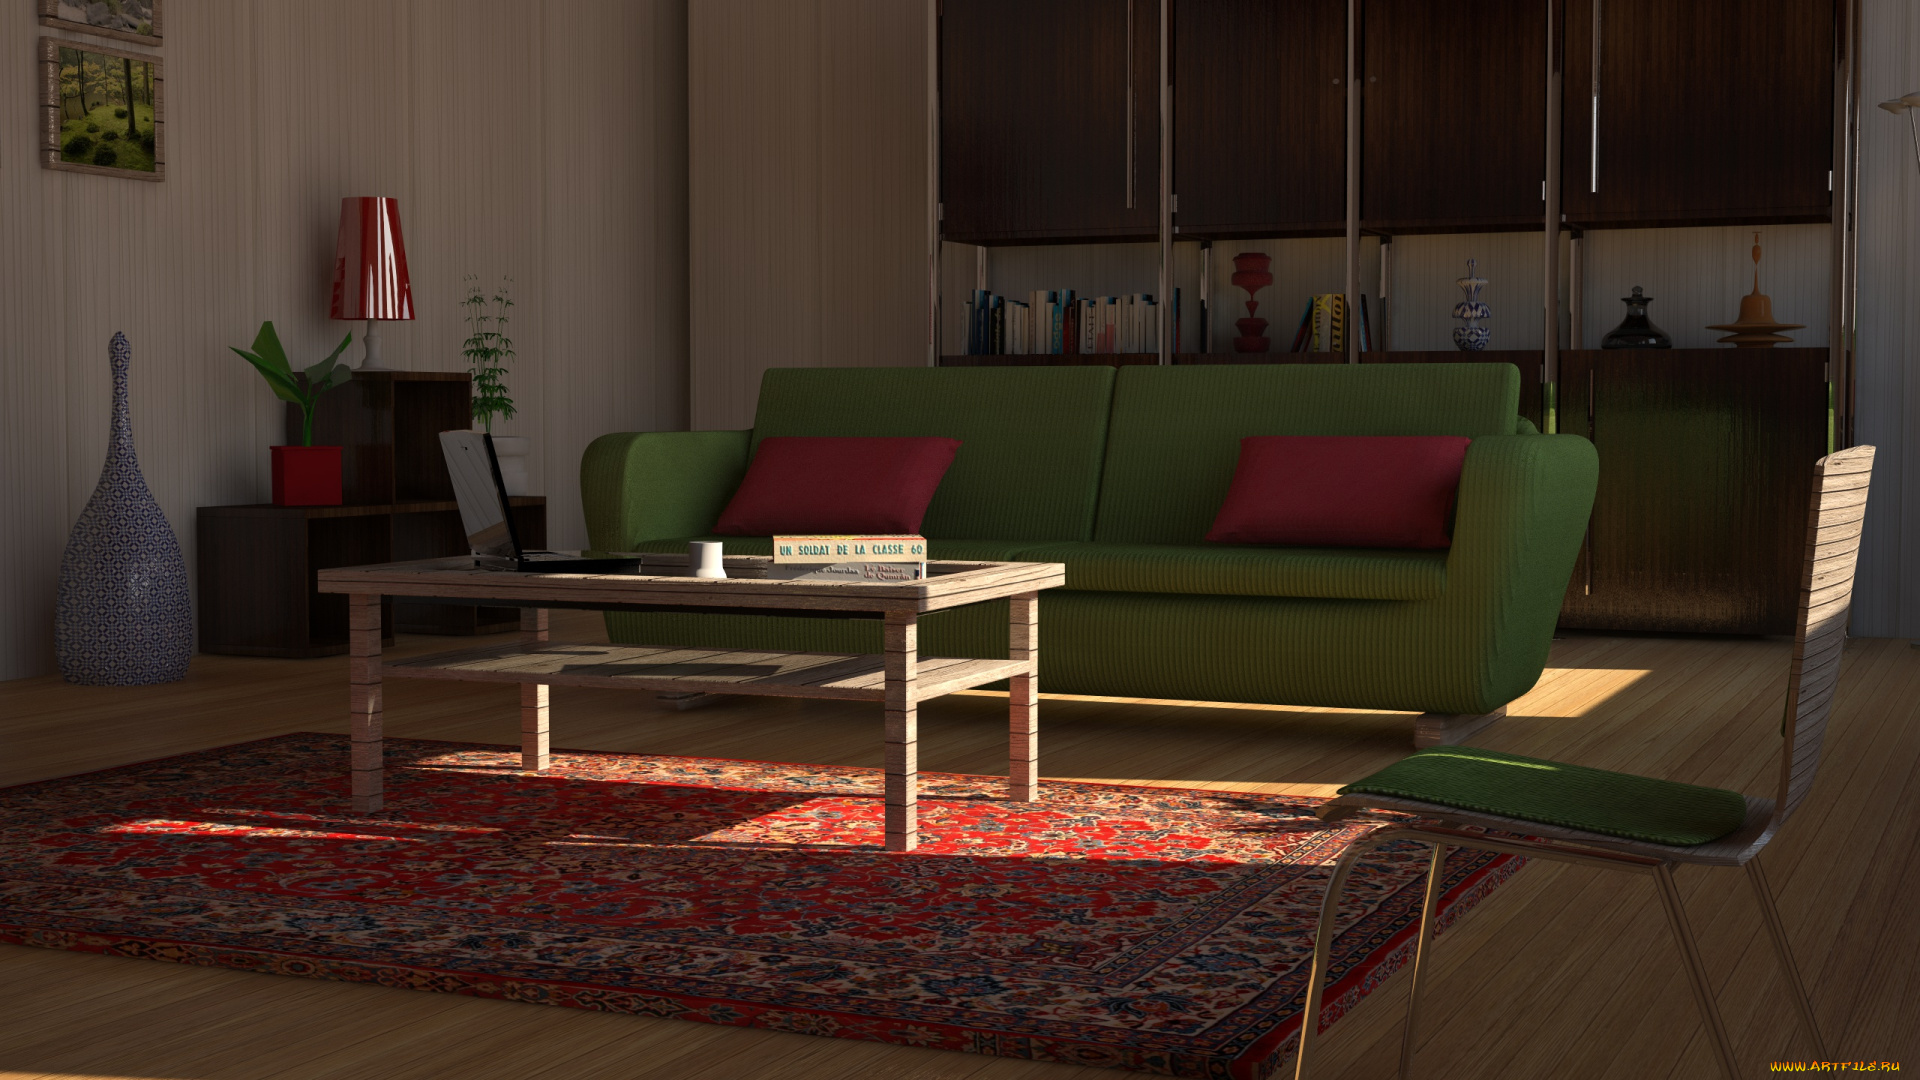 3д, графика, realism, реализм, стол, диван